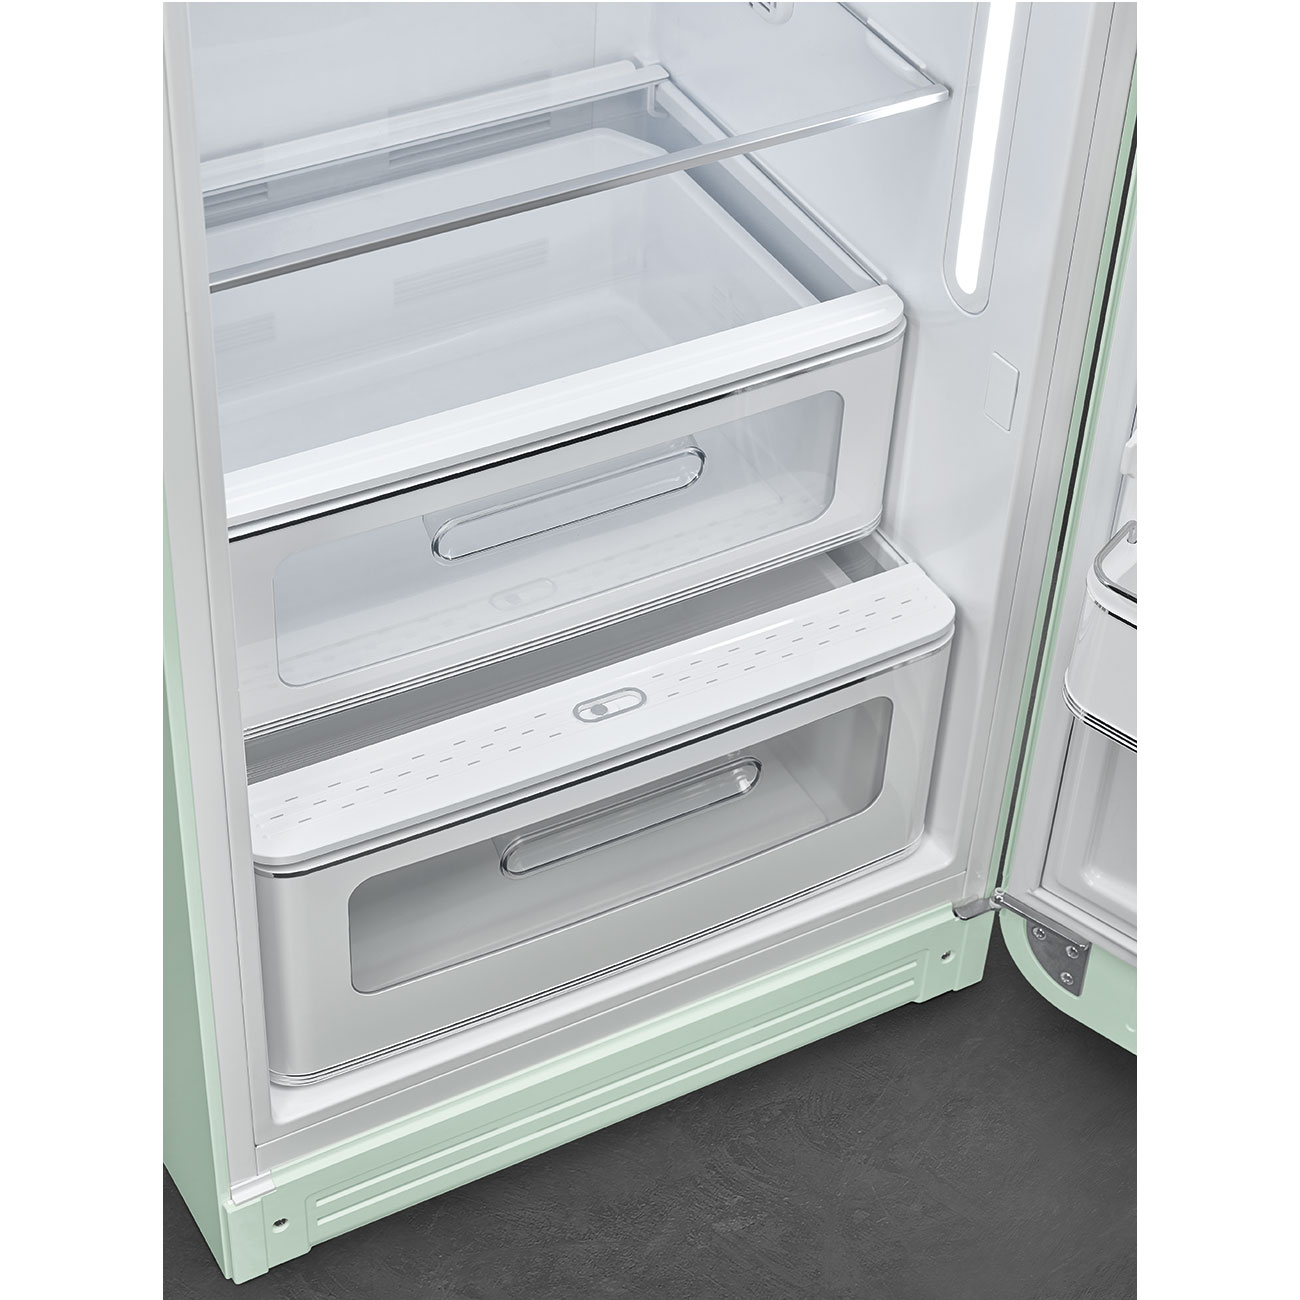 Smeg FAB28RPG5 Stand-Kühlschrank pastellgrün